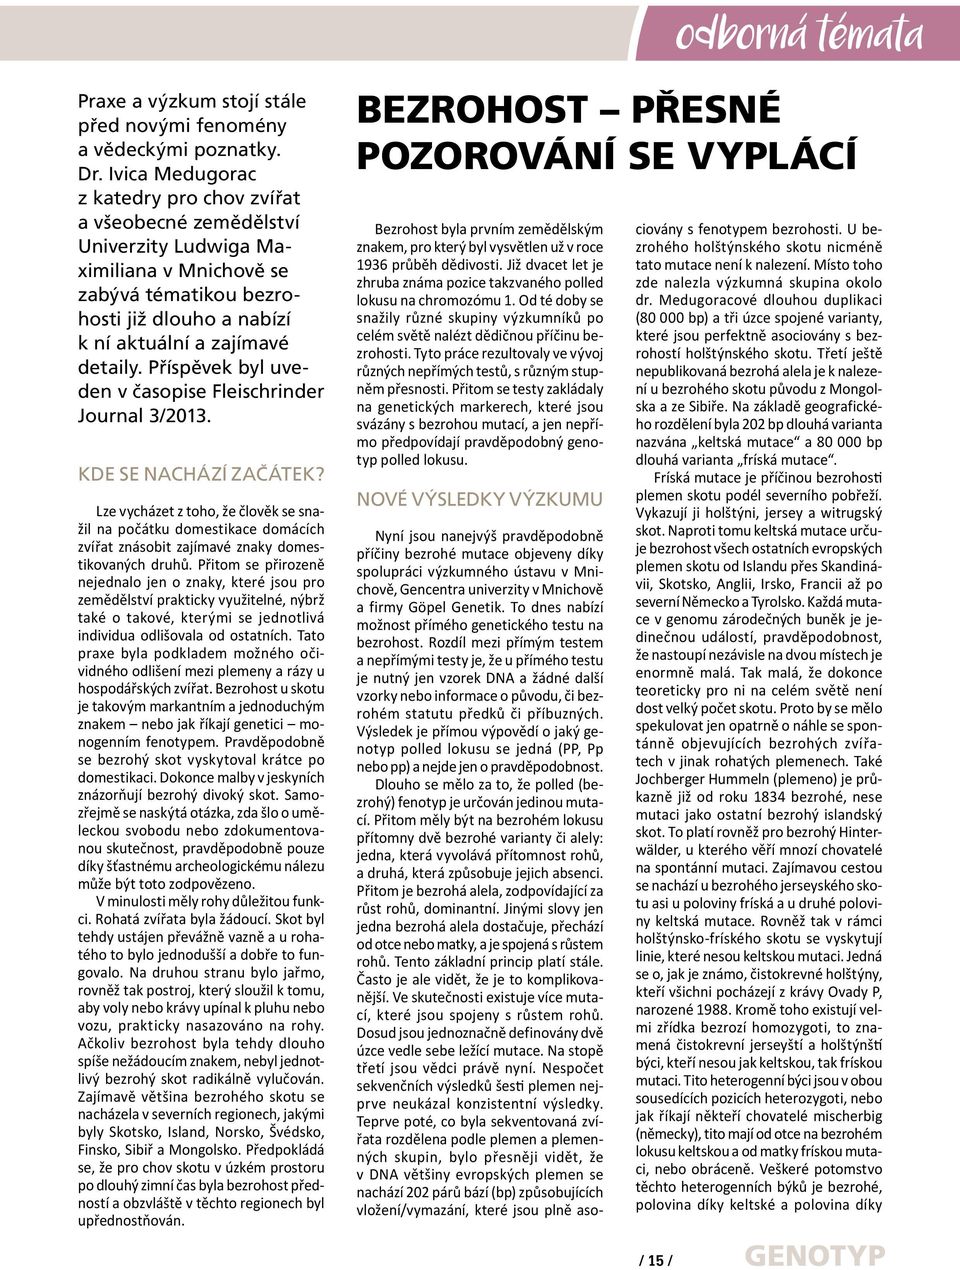 Příspěvek byl uveden v časopise Fleischrinder Journal 3/2013. KDE SE NACHÁZÍ ZAČÁTEK?